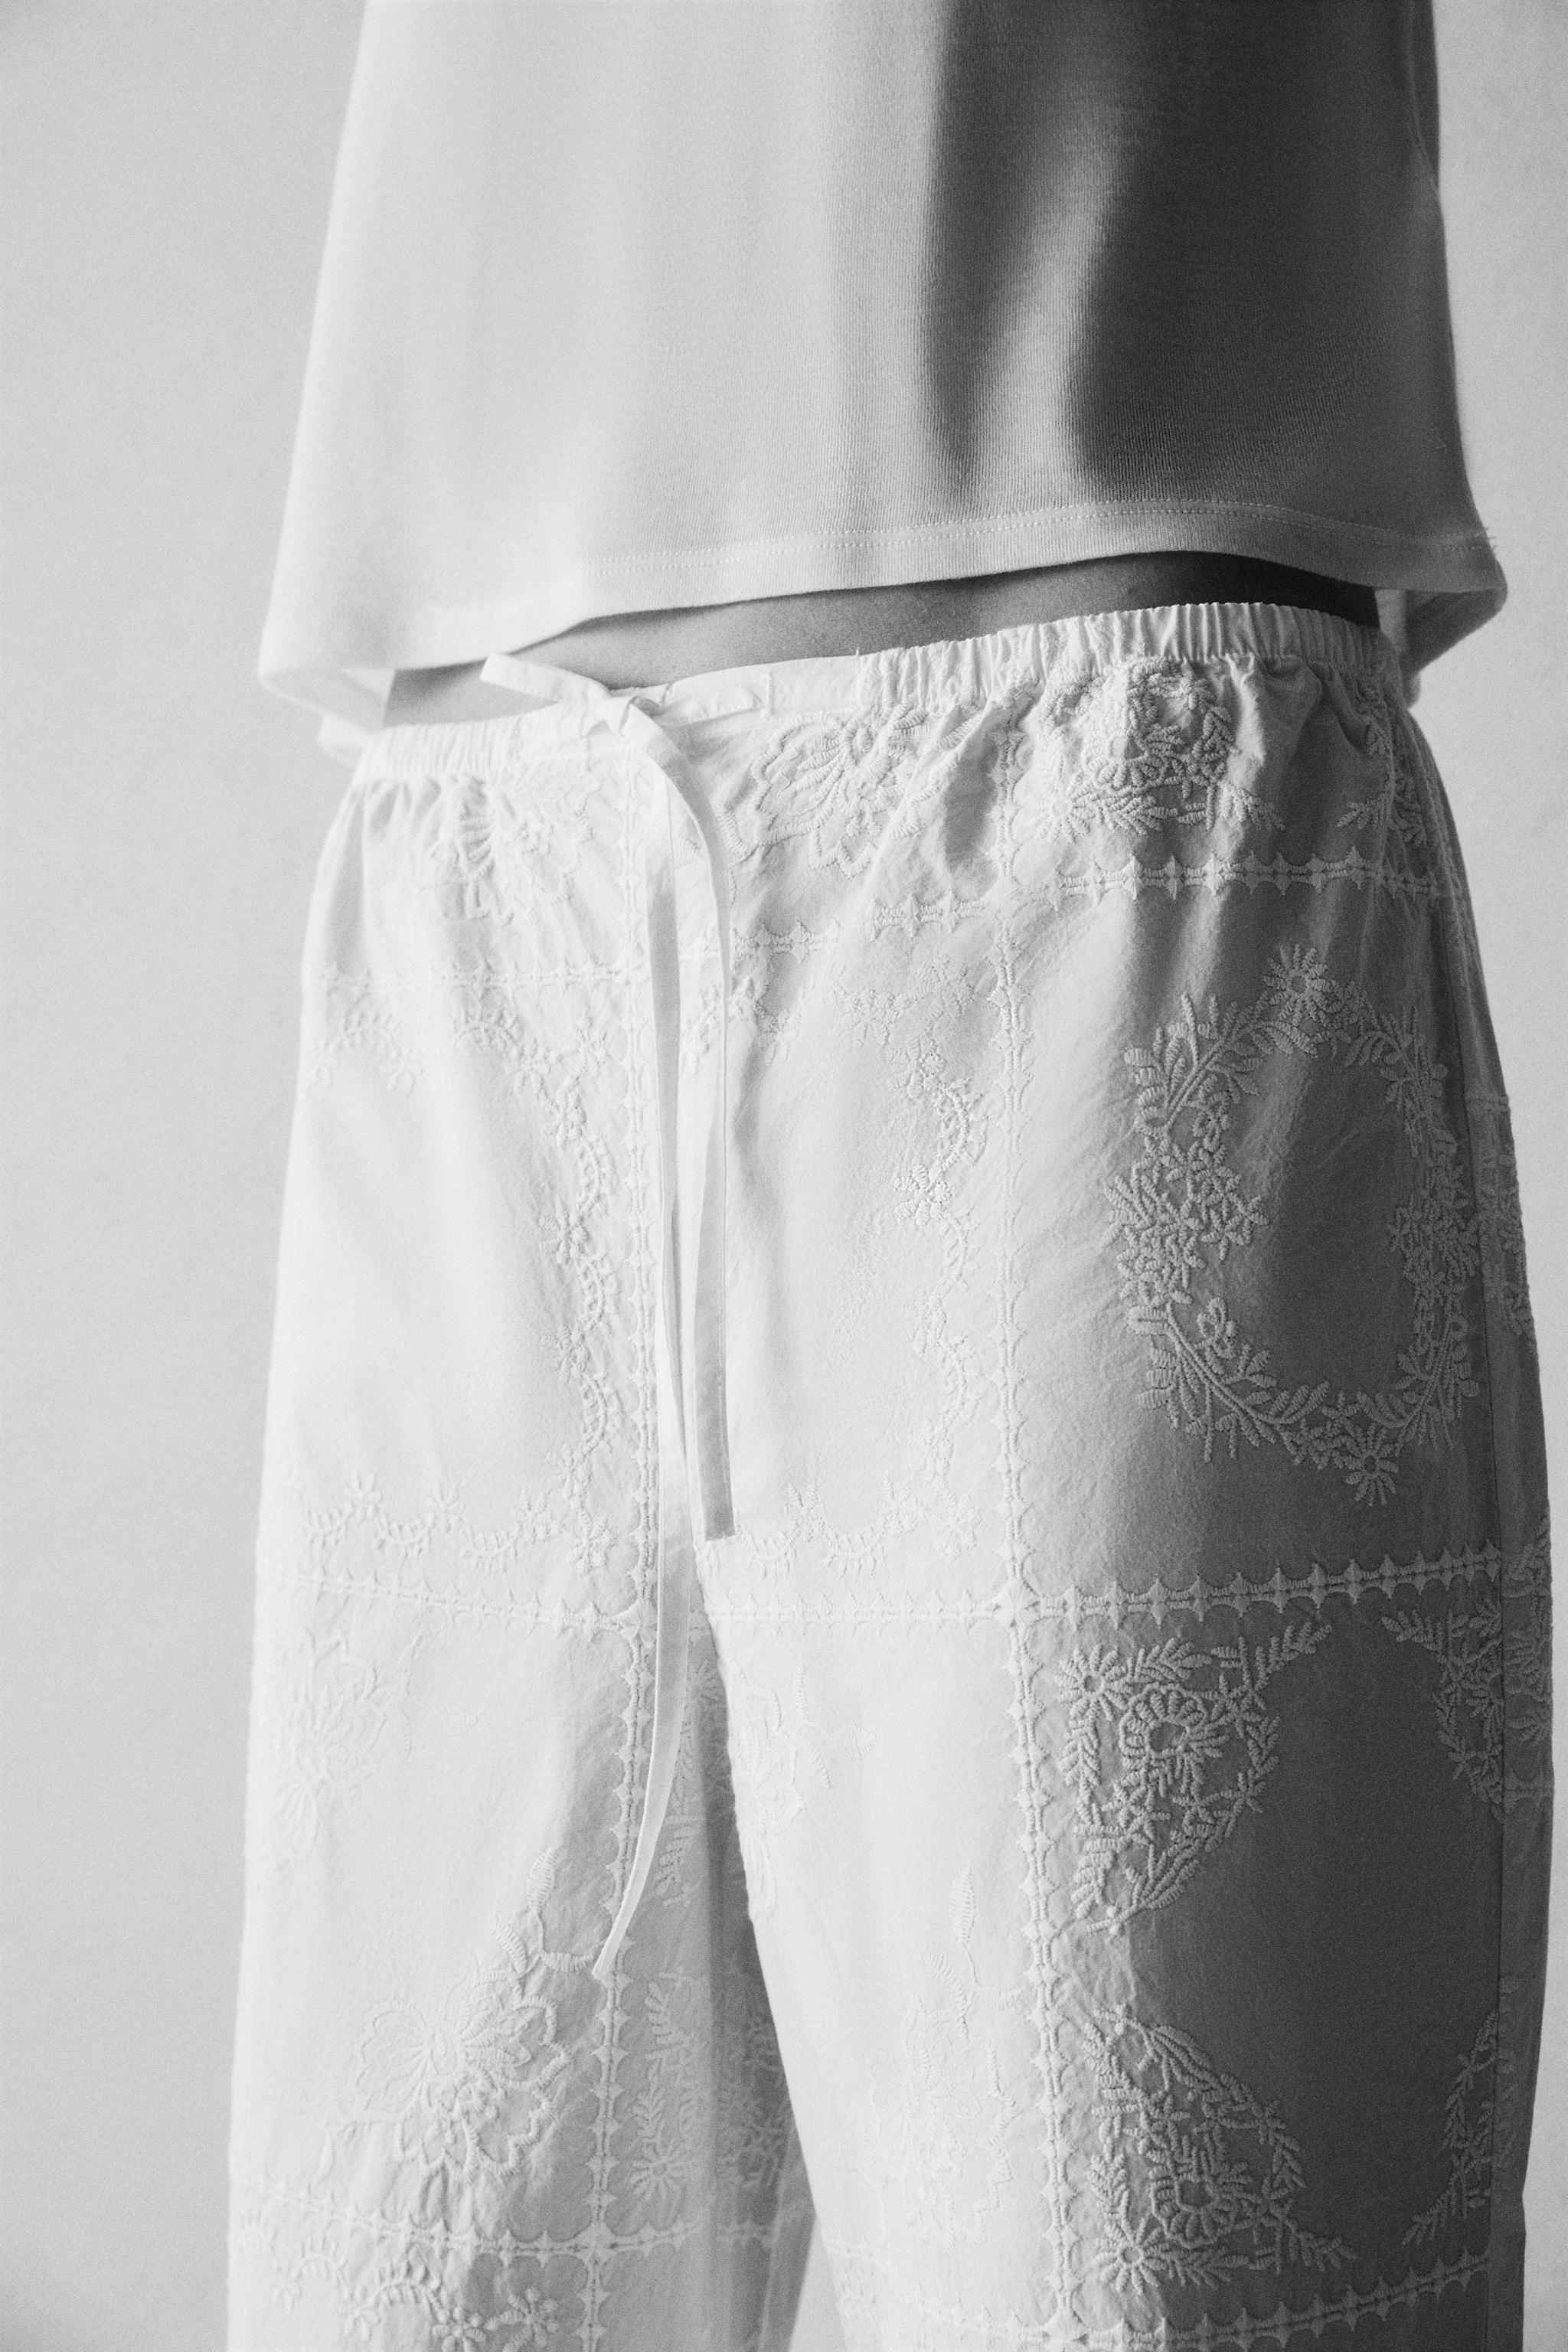 Combinando los pantalones bordados de Zara. Ref. 2731/046